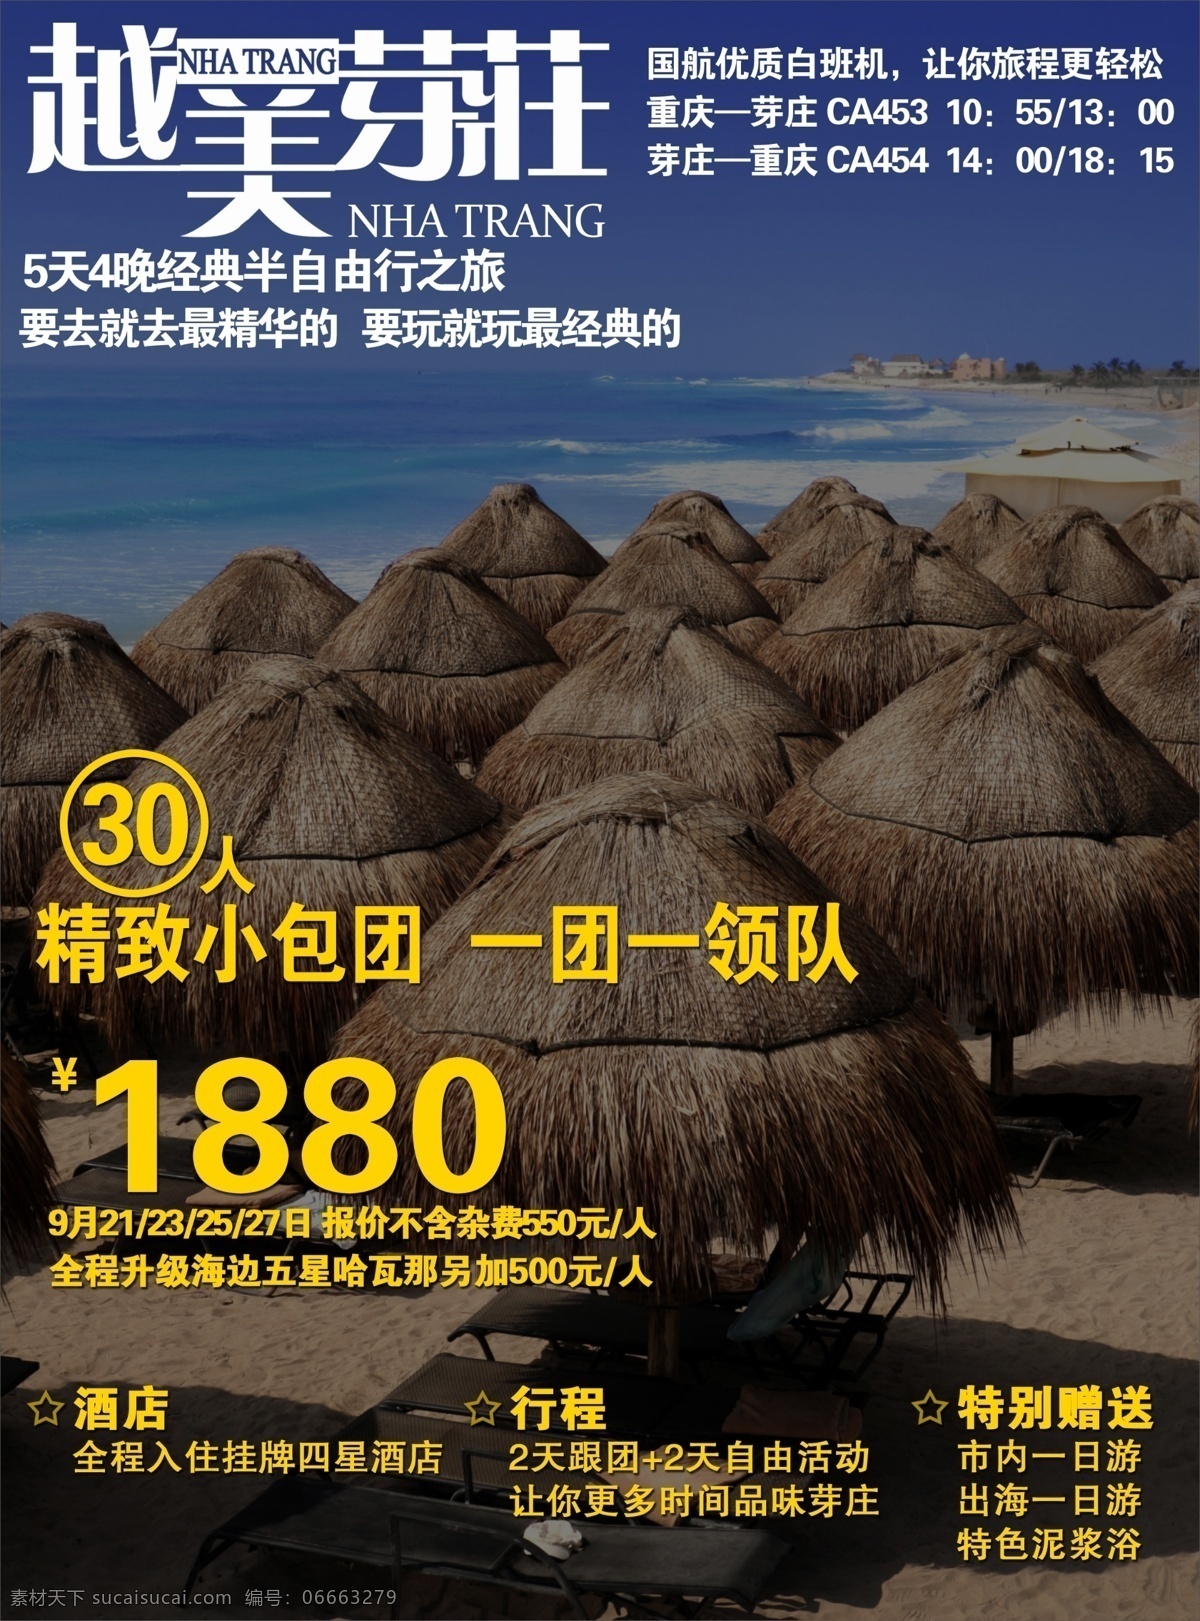 经典 芽庄 杂志 系列 海报 旅游 旅行社 旅行 旅程 旅途 海边 海滩 创意海报 版式设计 源文件 背景素材